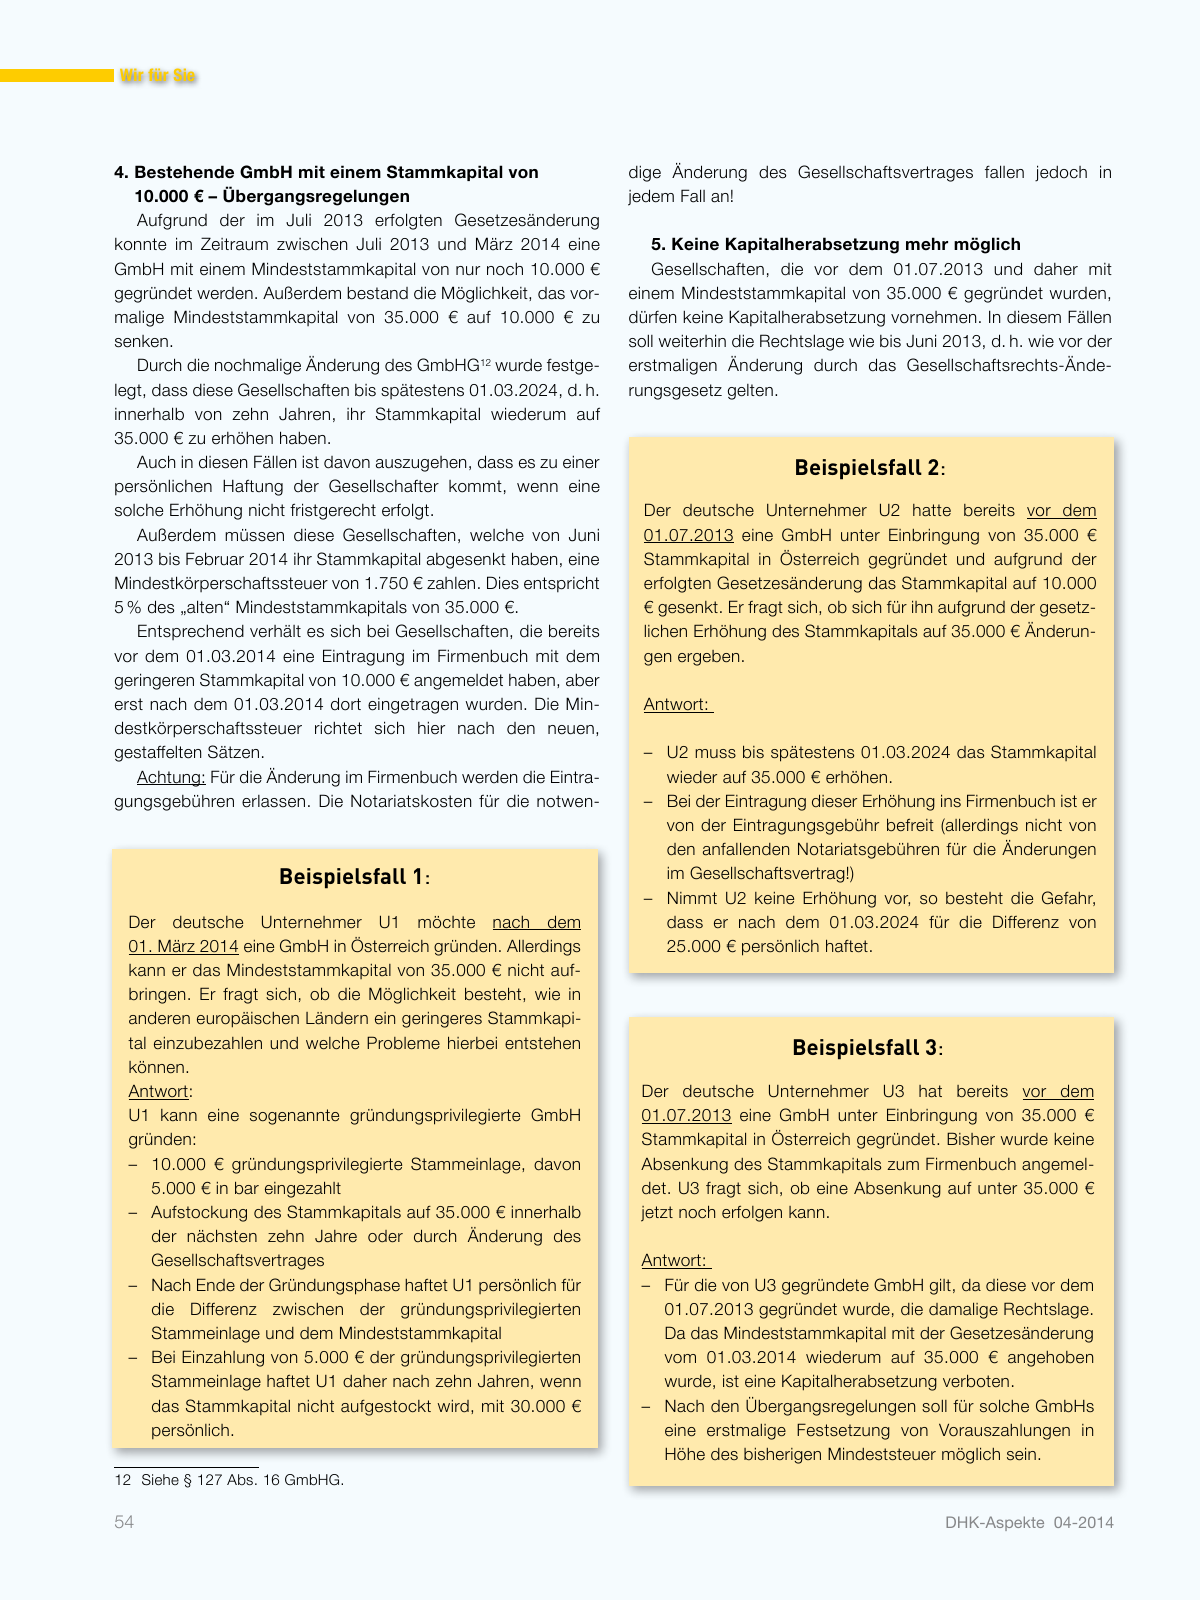 Vorschau Aspekte_04_2014 Seite 54